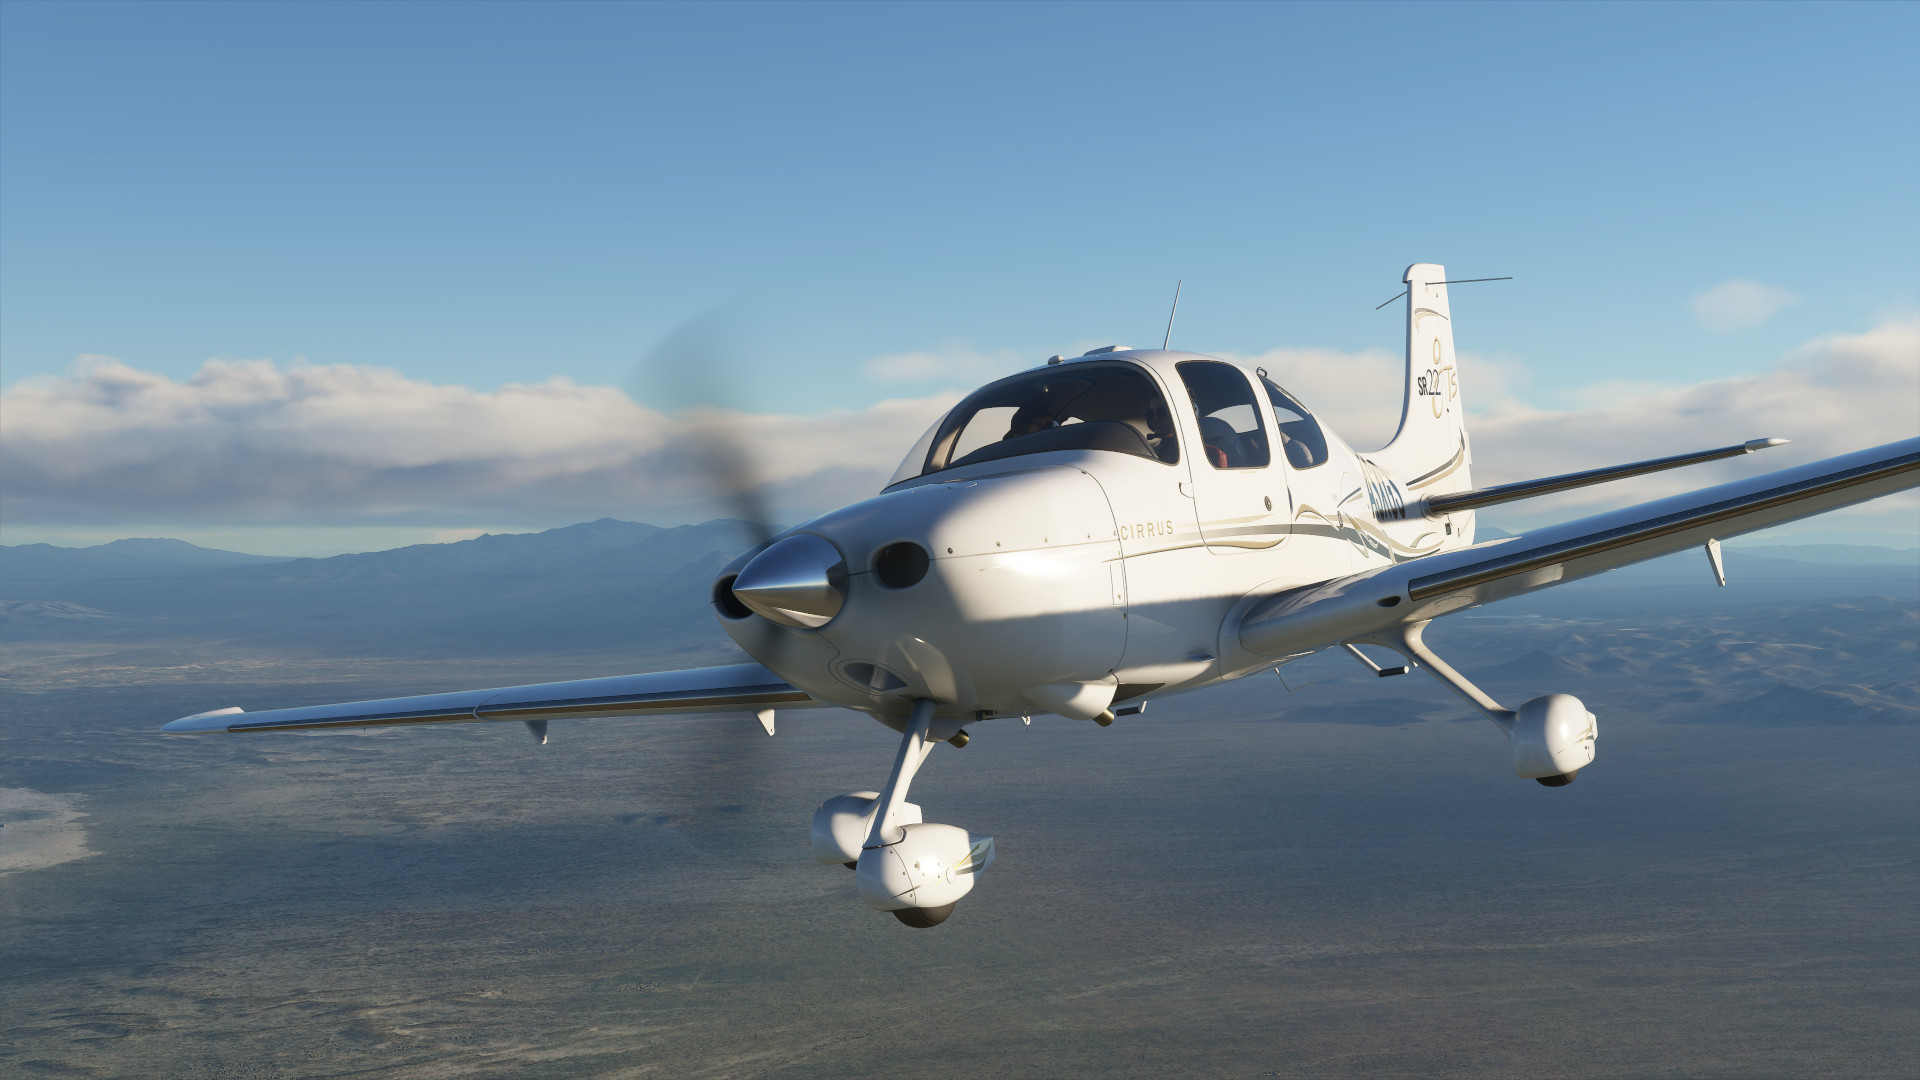 Microsoft Flight Simulator Highlights Asien an de Mëttleren Osten a wonnerschéinen neien Trailer